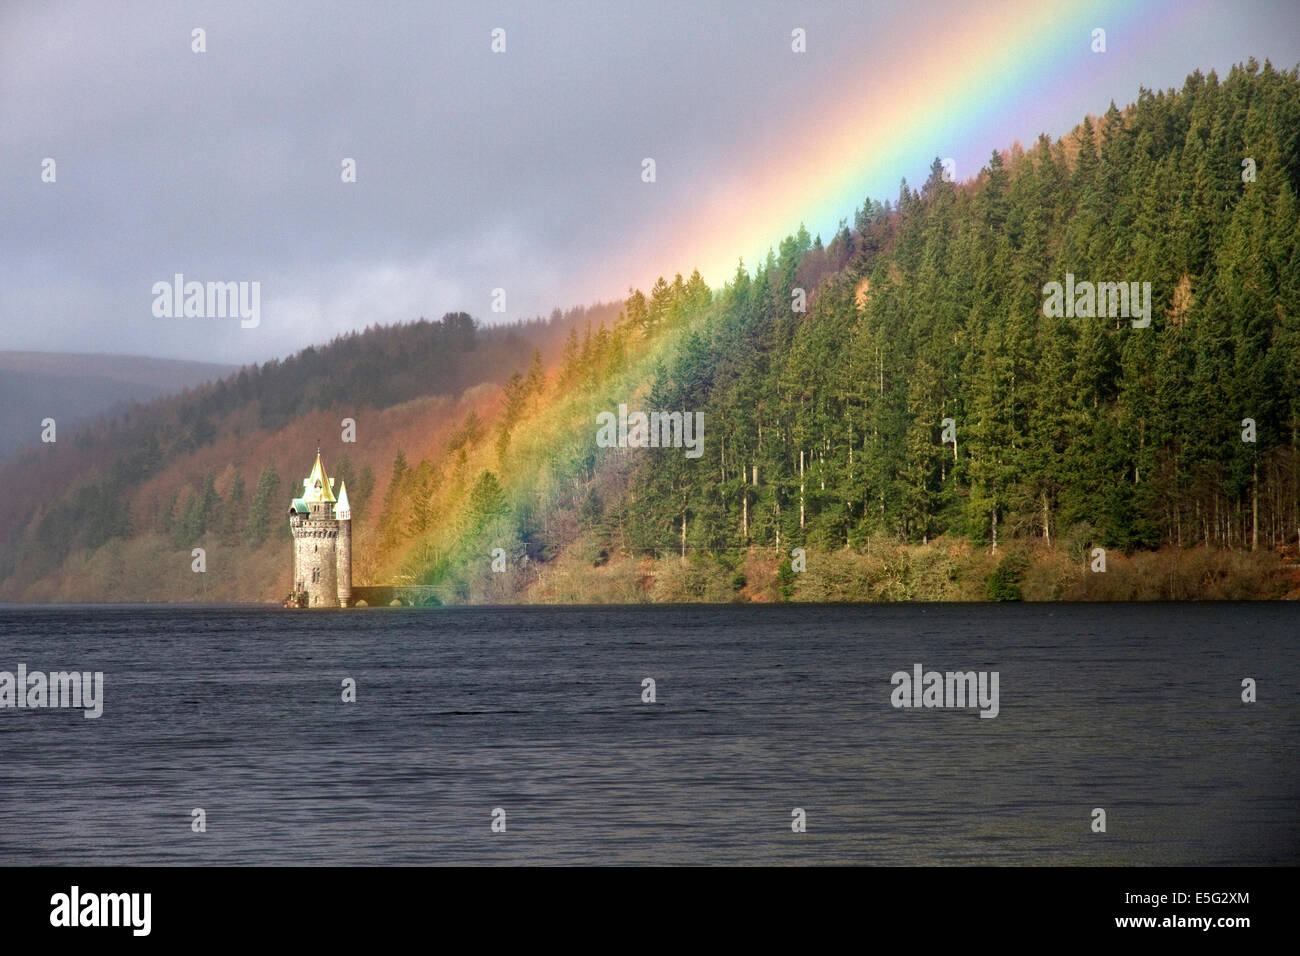 Rainbow mette in evidenza la gotica Torre deformatori sul Lake Vyrnwy (serbatoio Vittoriano) Montgomeryshire, Powys, Wales, Regno Unito Foto Stock